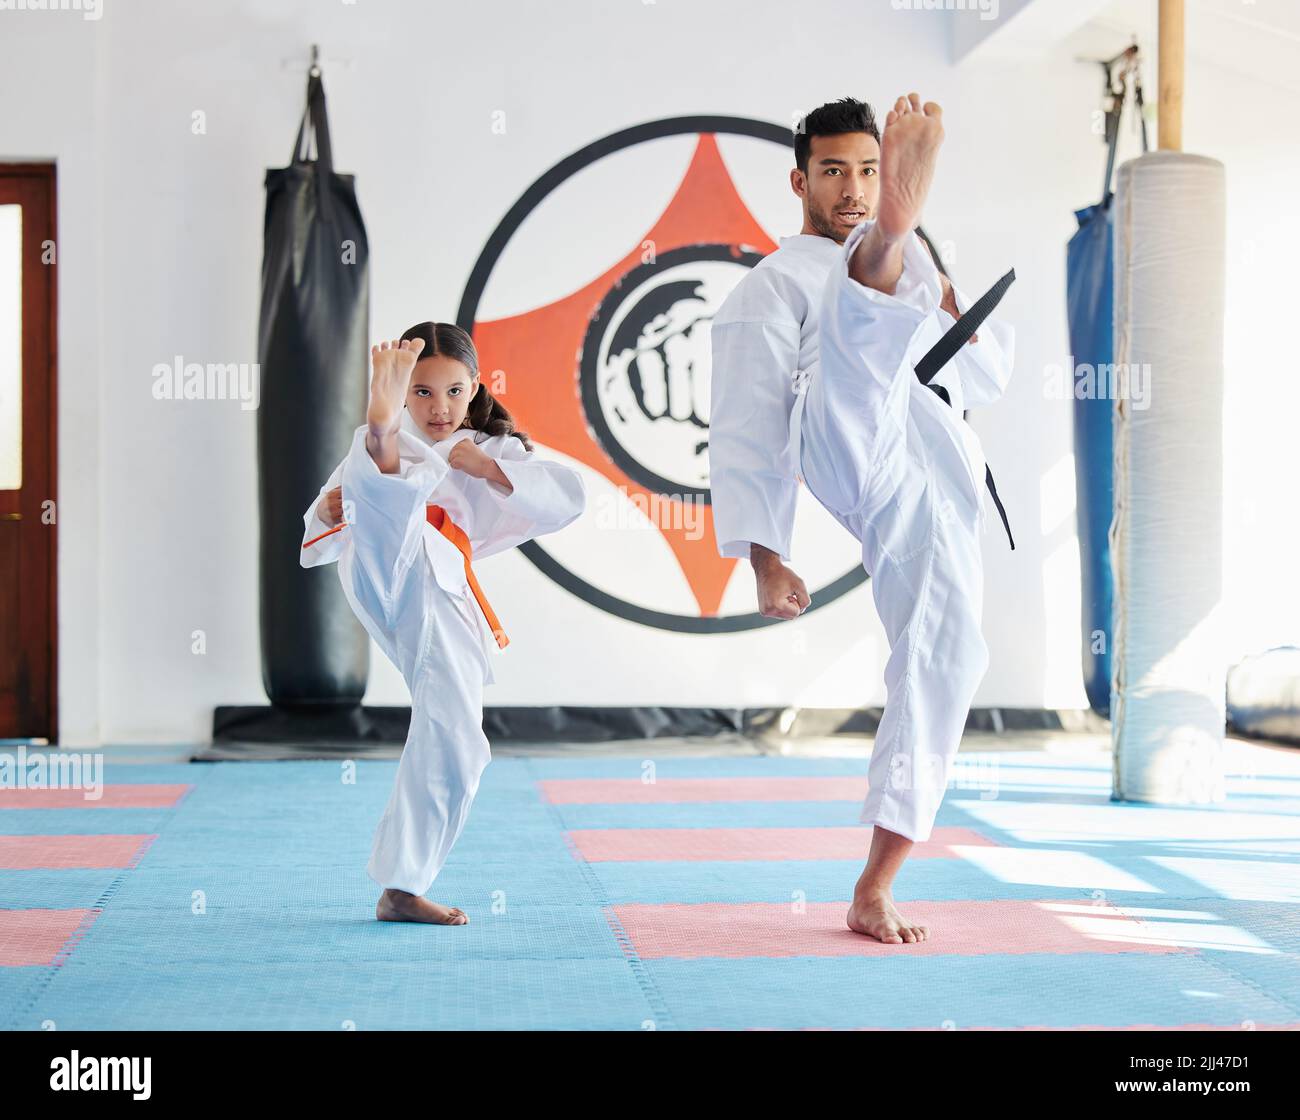 Lassen Sie sich nicht von ihrer Größe täuschen. Ein junger Mann und nettes kleines Mädchen üben Karate in einem Studio. Stockfoto